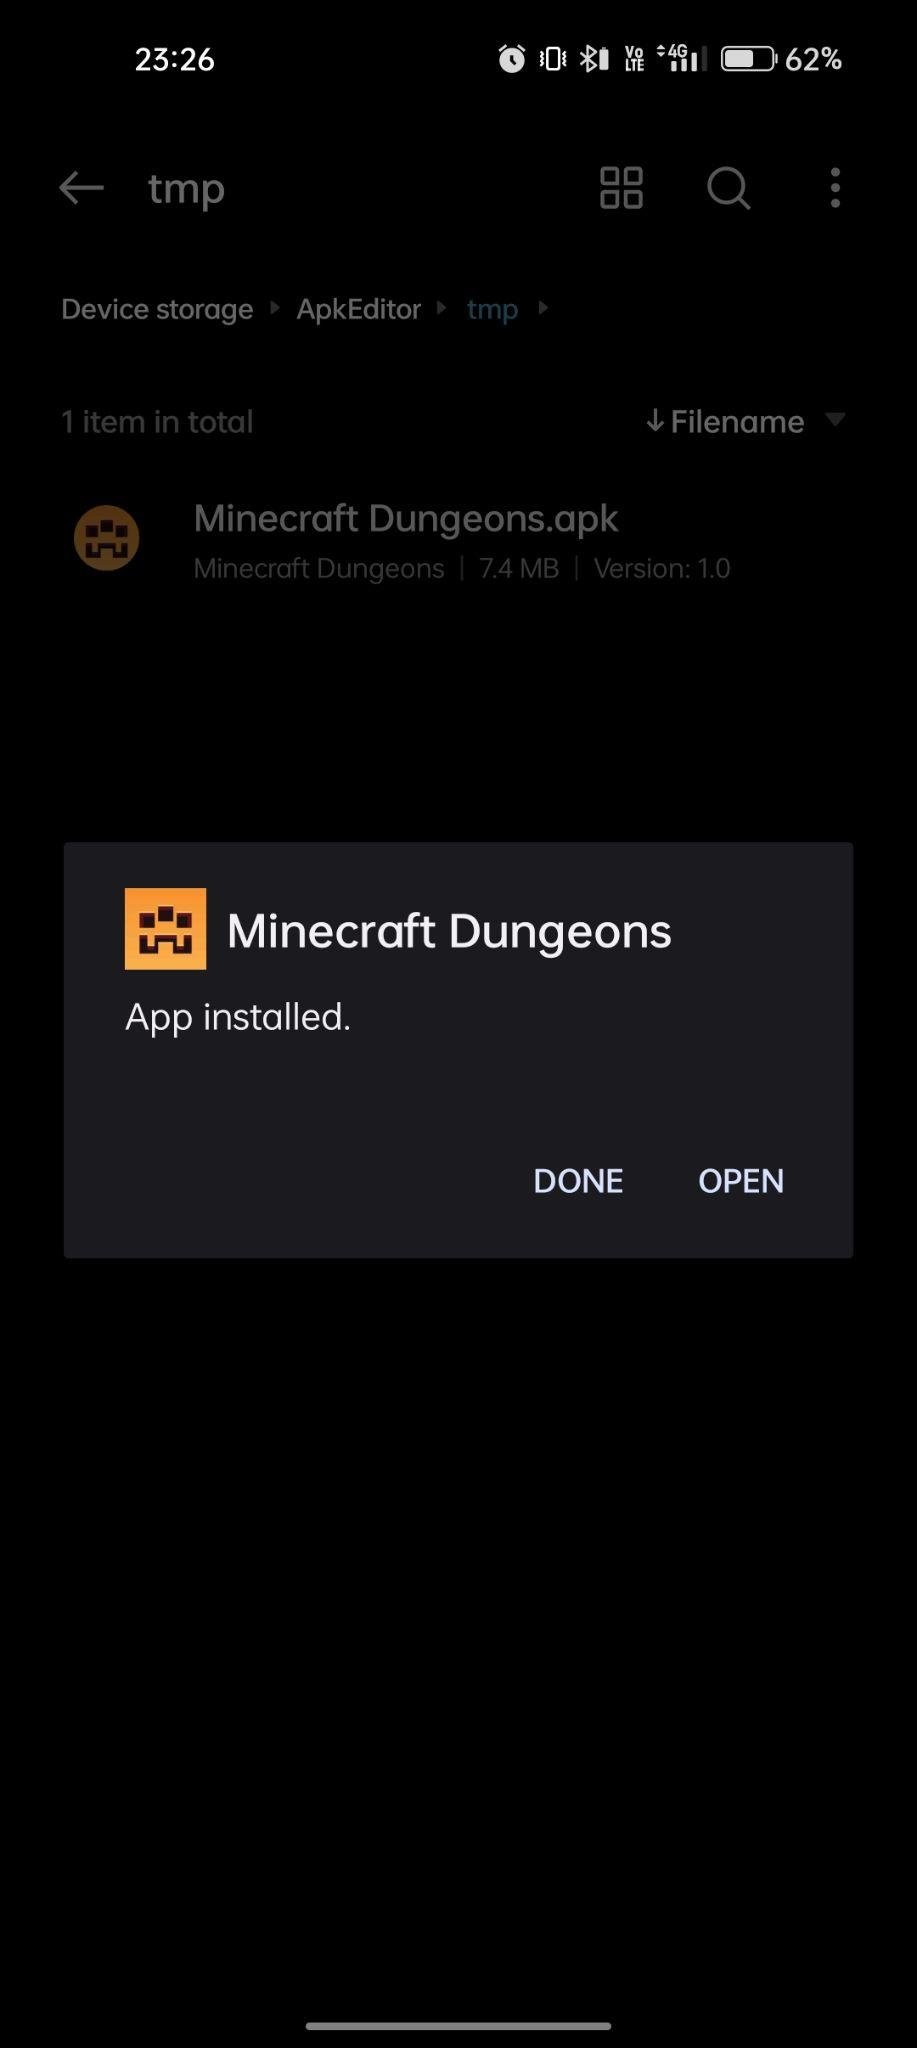 minecraft dungeons apk installed